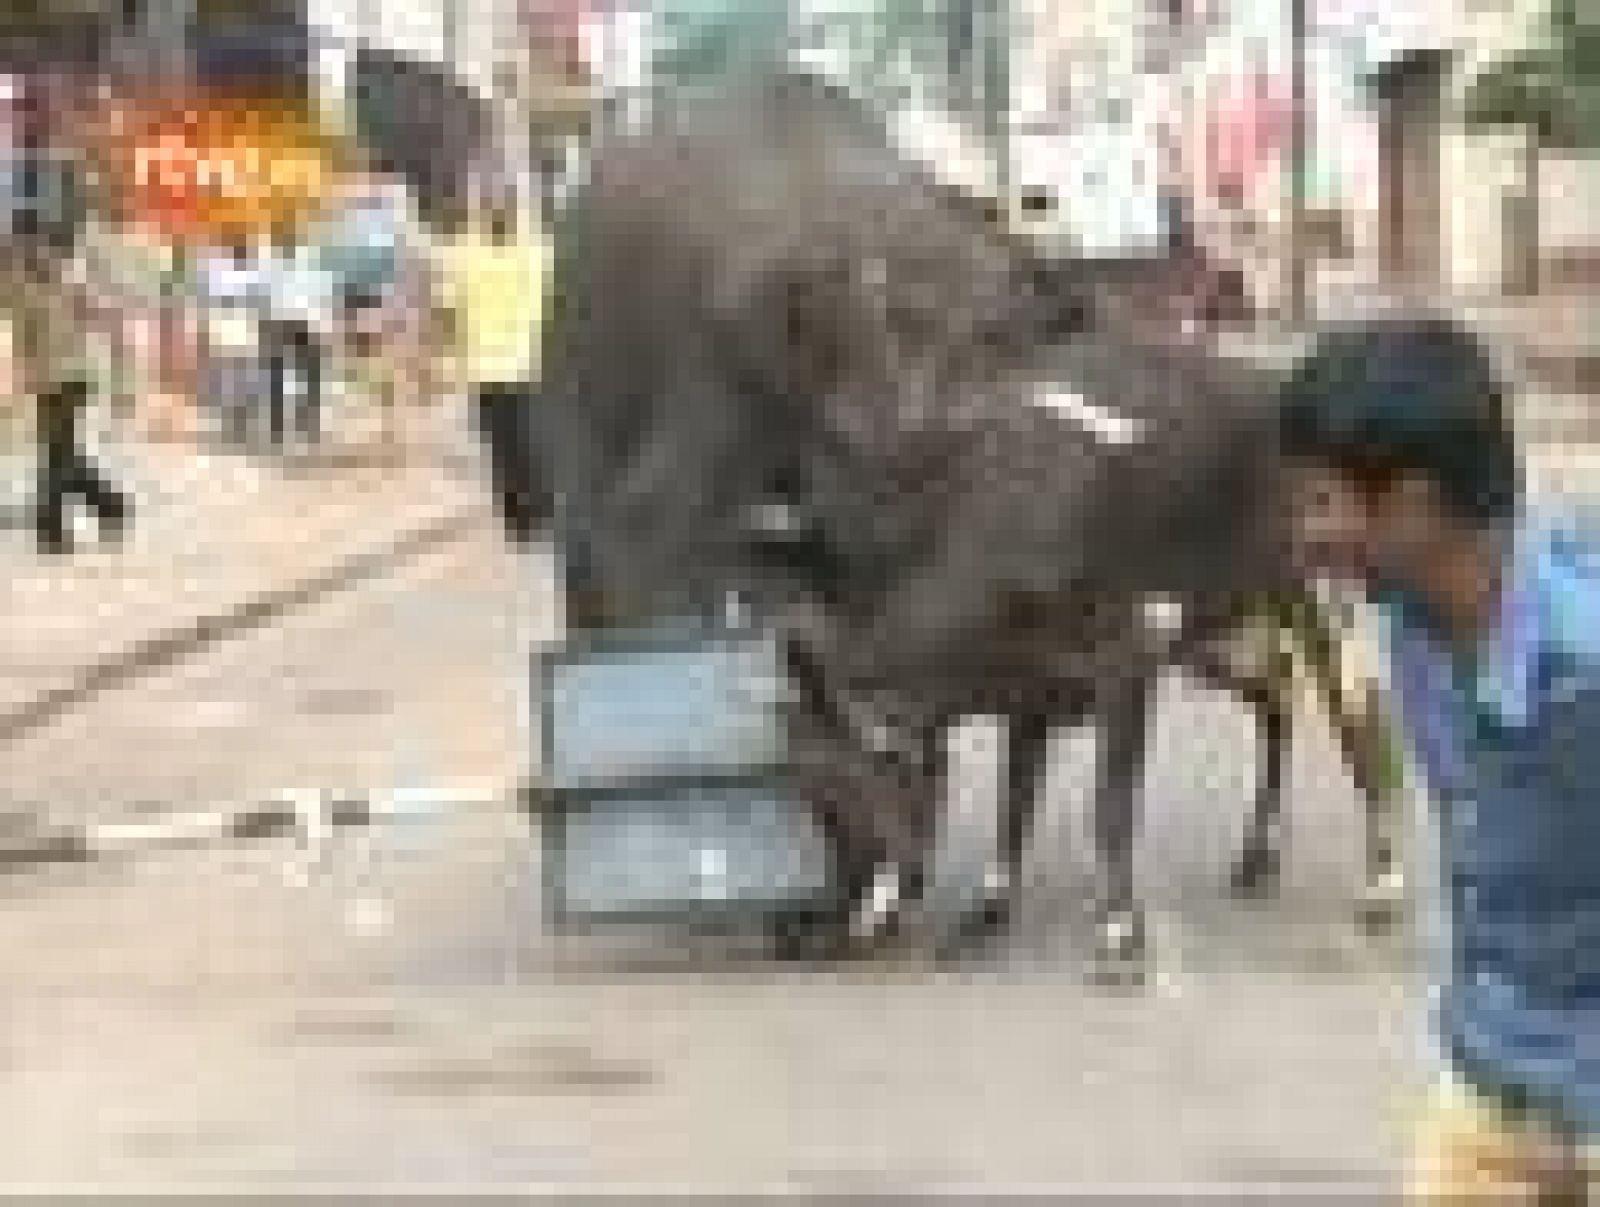  Dos elefantes salvajes han entrado este miércoles en una ciudad del sudoeste indio y han matado a una persona tras causar el pánico entre la población. El suceso se produjo en Mysore, en el estado de Karnataka y donde los paquidermos han estado dura